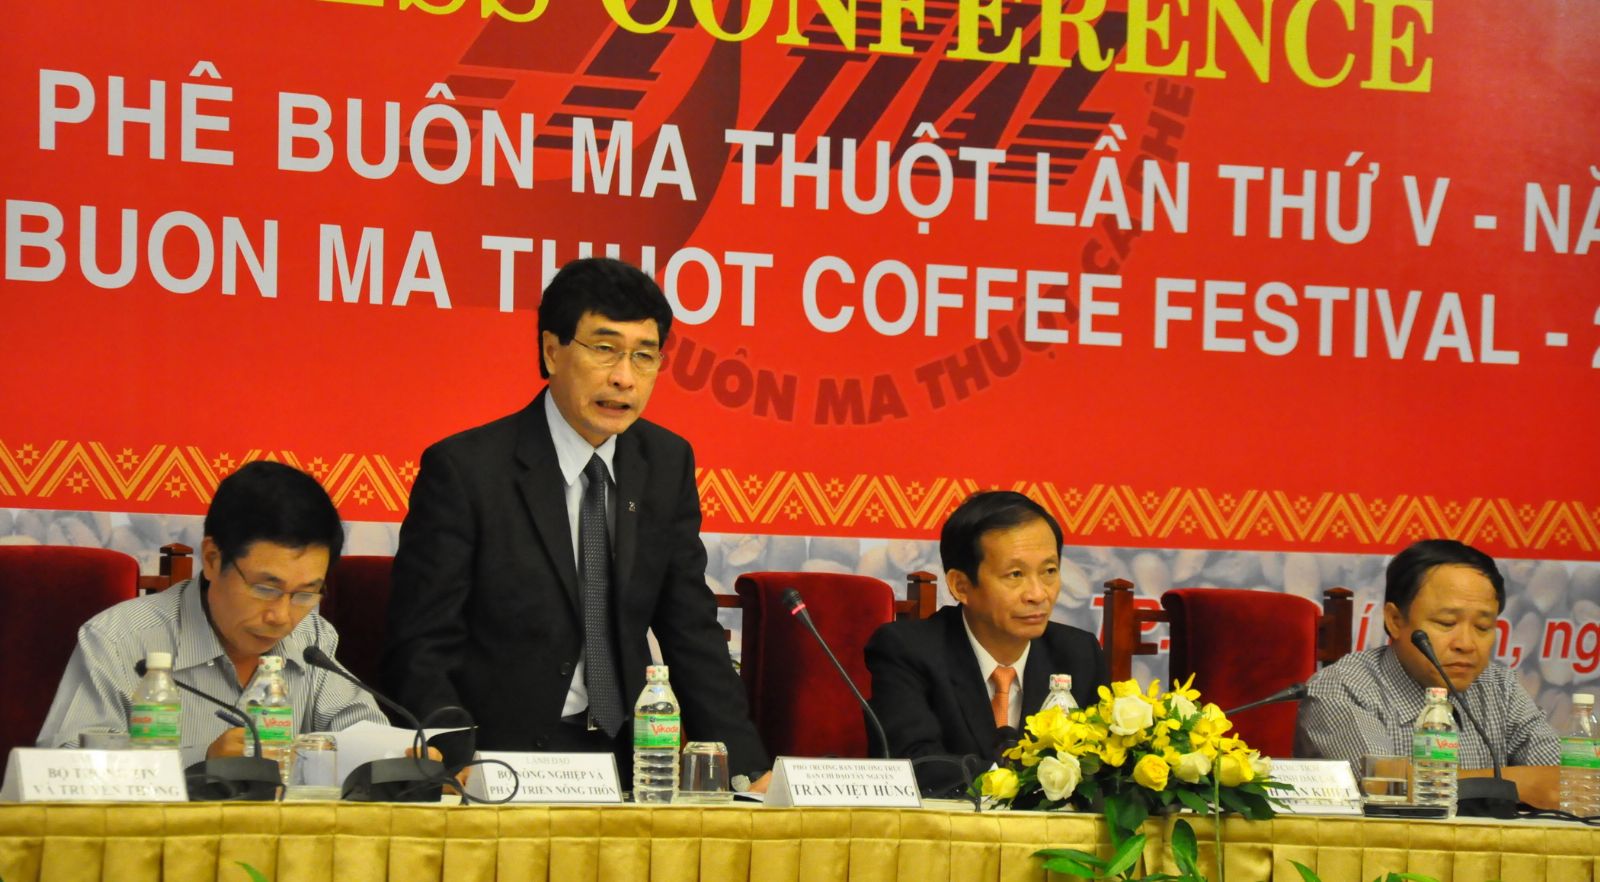 Phó trưởng ban Thường trực Ban Chỉ đạo Tây Nguyên Trần Việt Hùng trả lời câu hỏi của các cơ quan thông tấn, báo chí